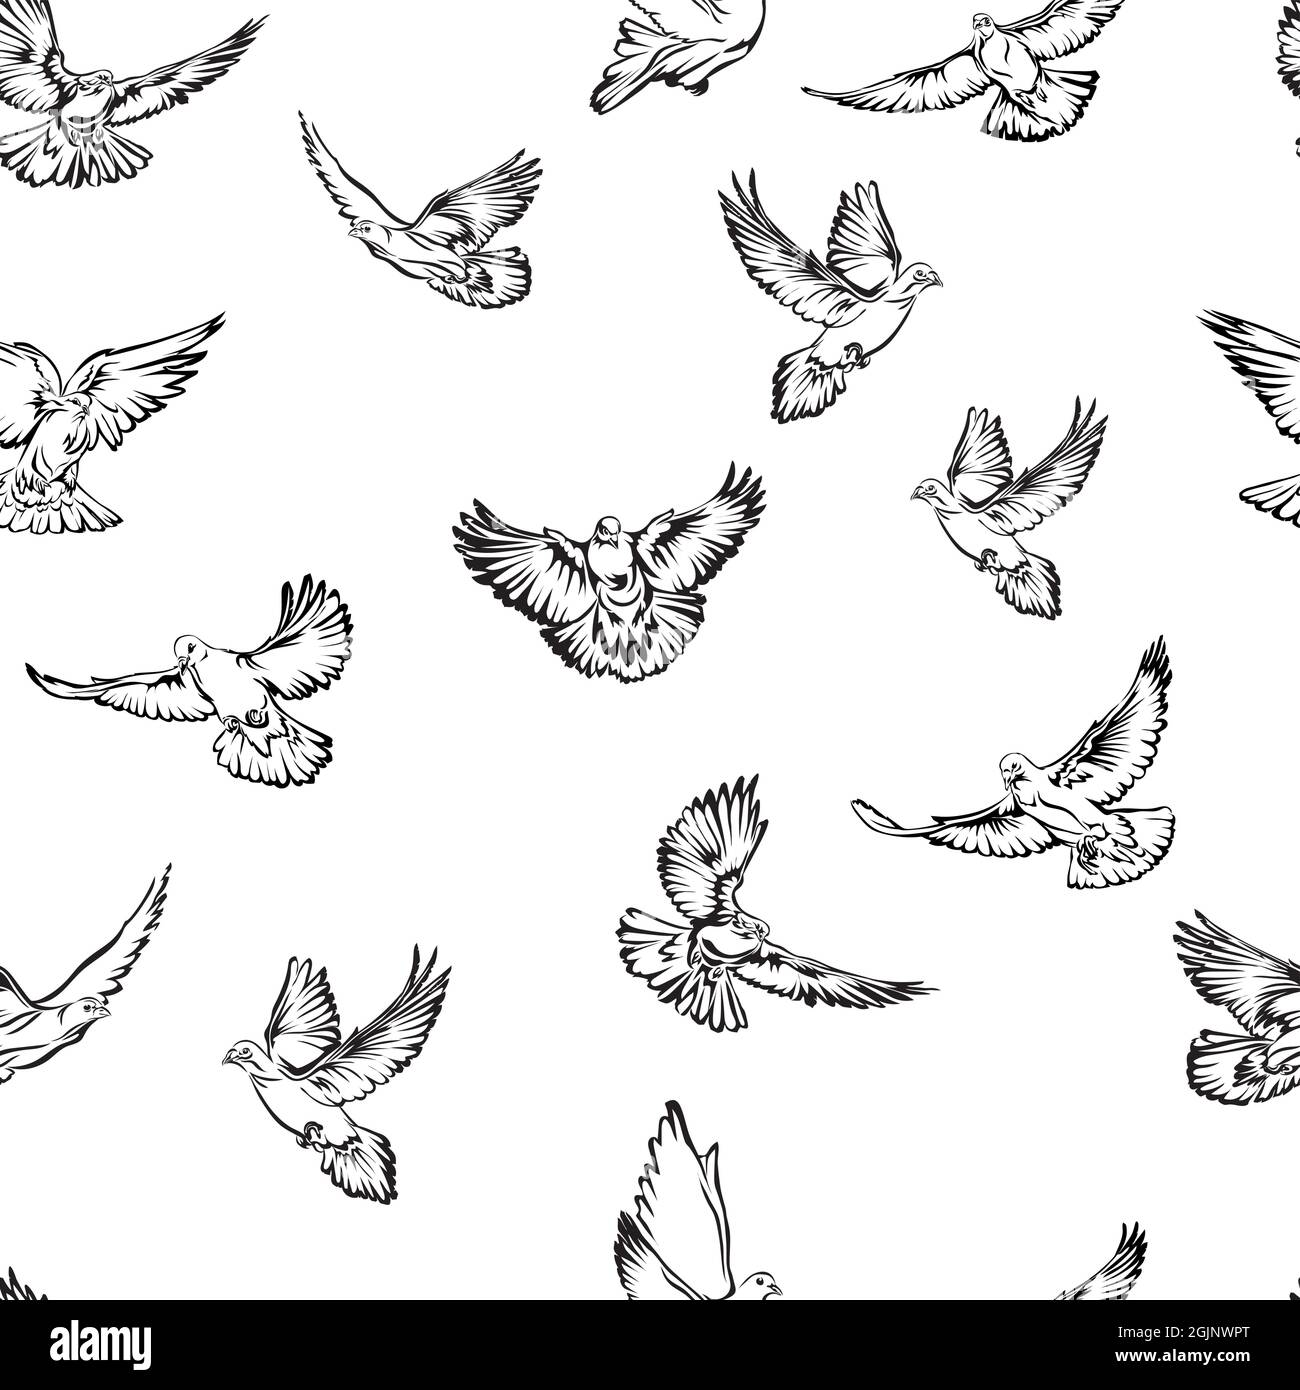 Dove, image noir et blanc Dove volante, image d'options, vecteur, dessin, illustration, motif, image de colombes volantes, motif pour le design et la décoration Illustration de Vecteur